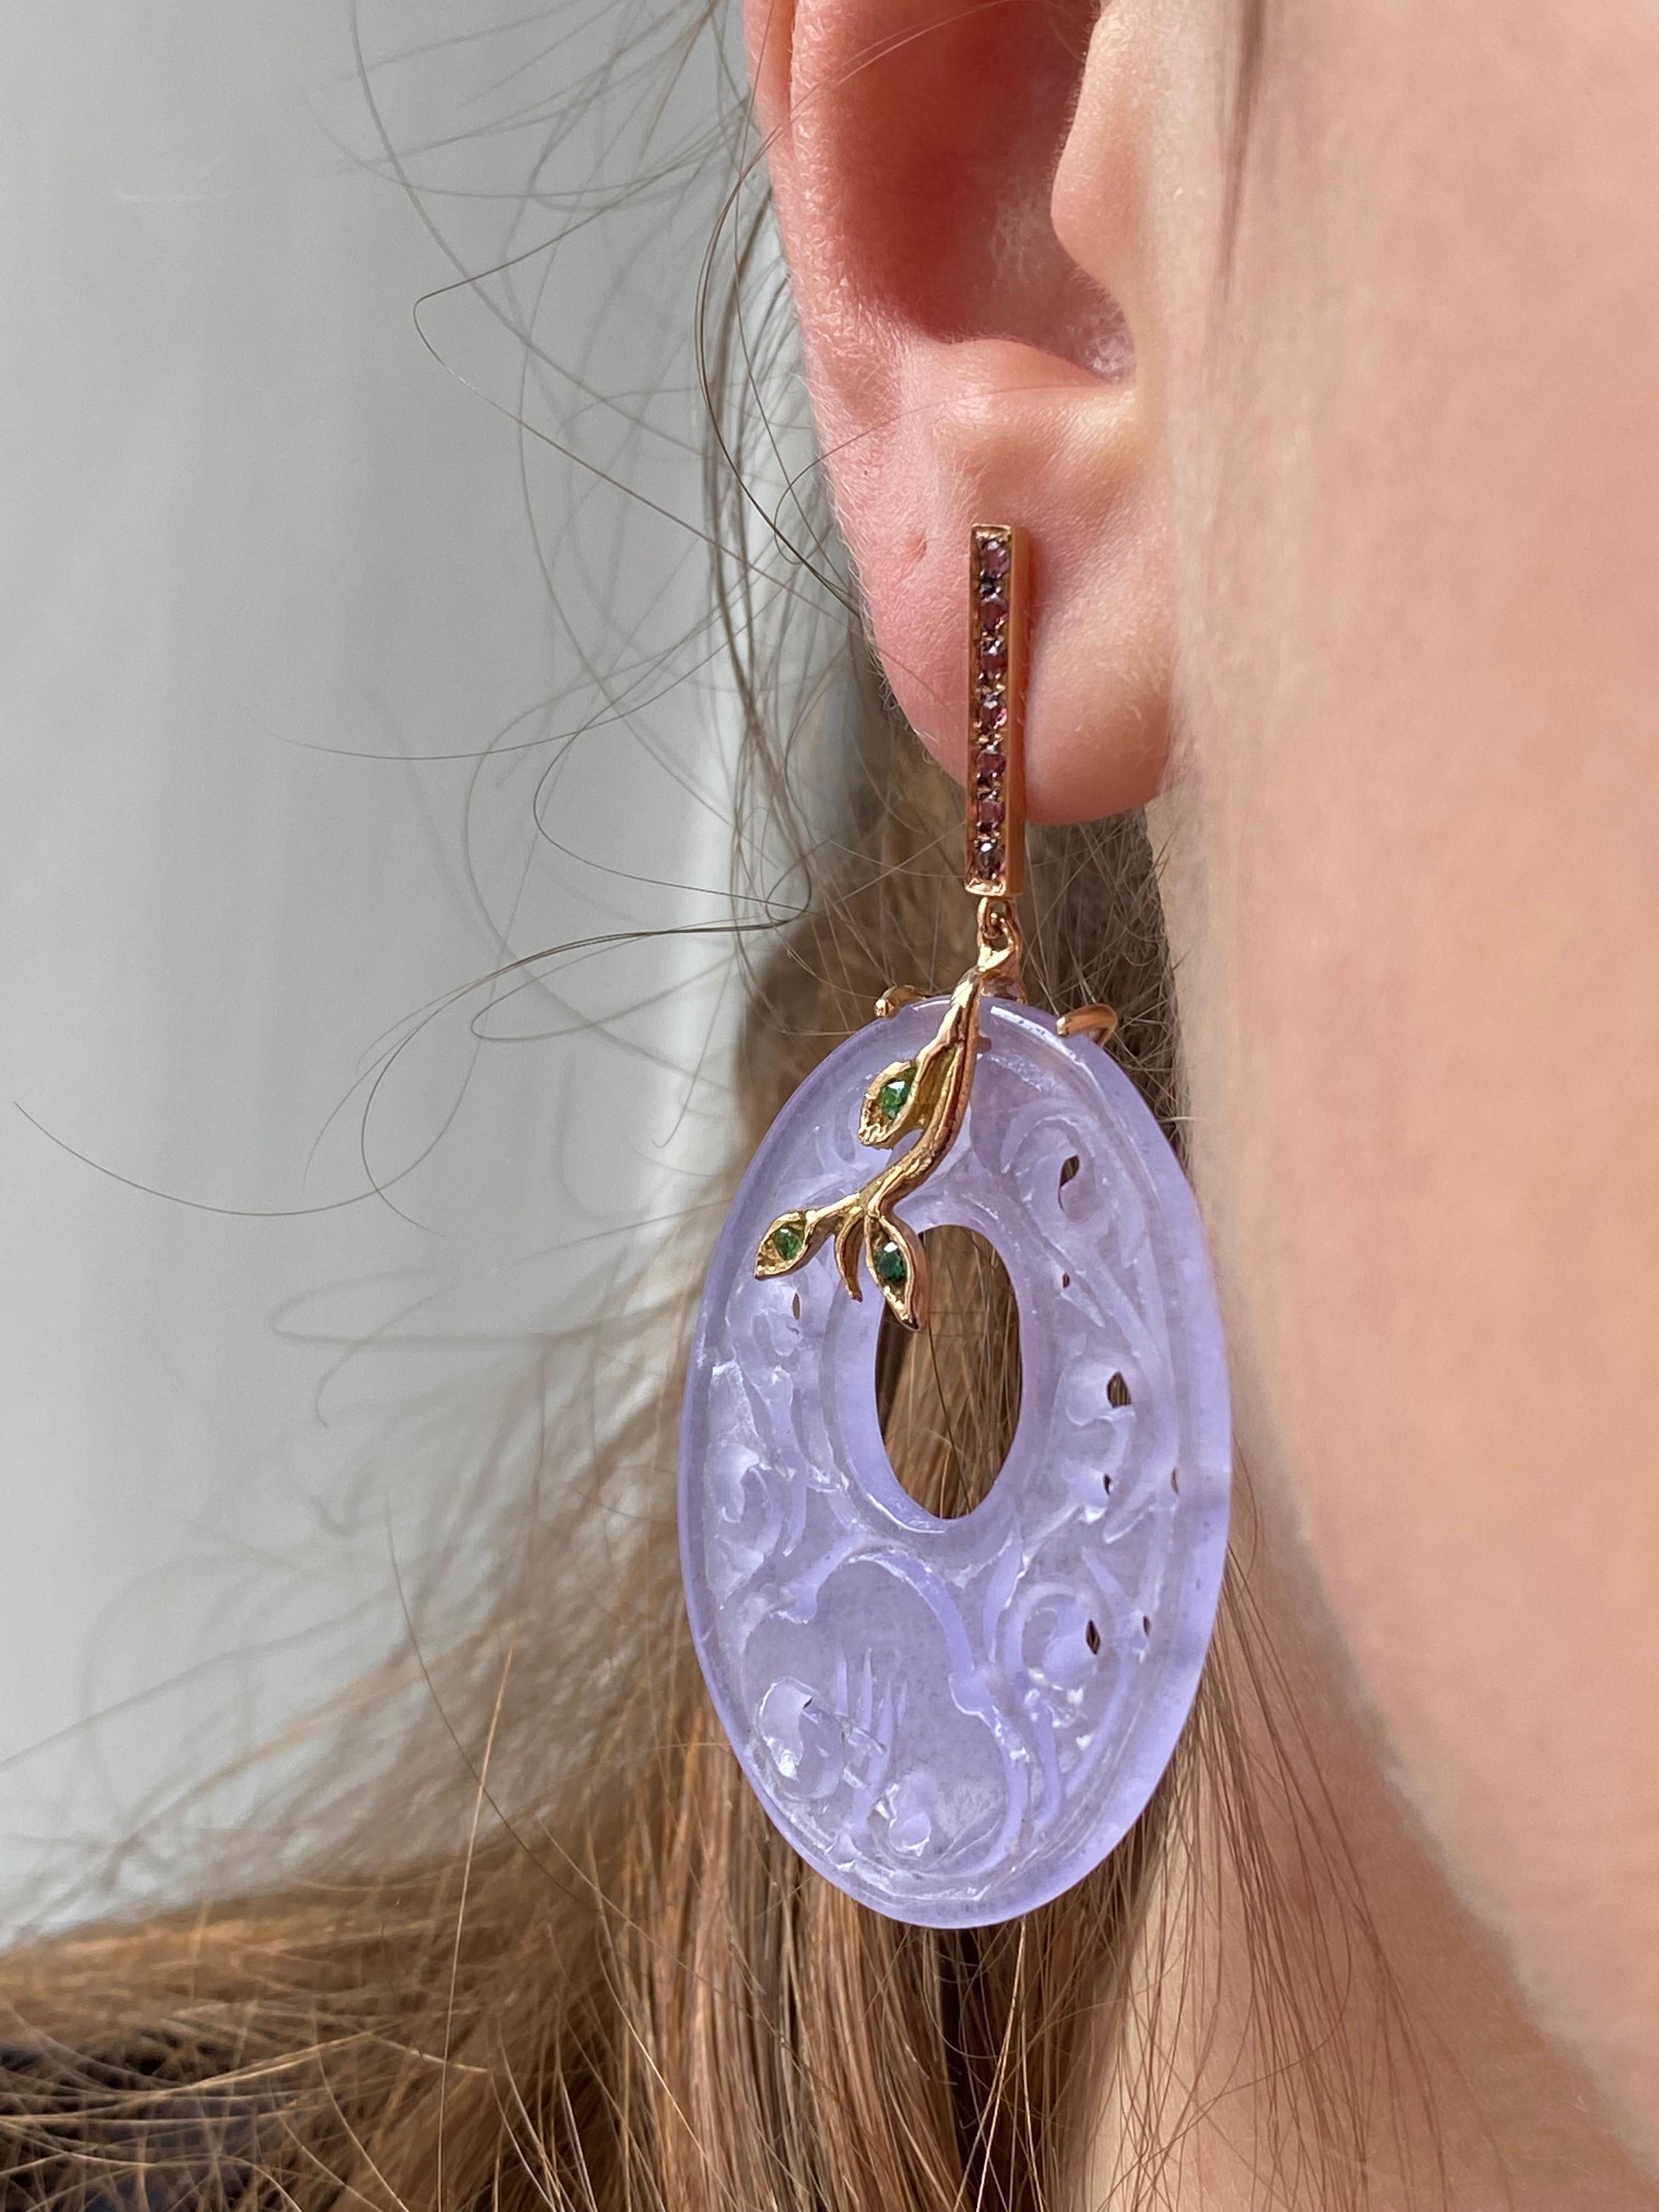 Découvrez l'incarnation de la grâce et de la sophistication avec les exquises boucles d'oreilles de Rossella Ugolini en quartz rose de couleur pourpre, méticuleusement conçues en or jaune 18 carats. Ces boucles d'oreilles sont une véritable